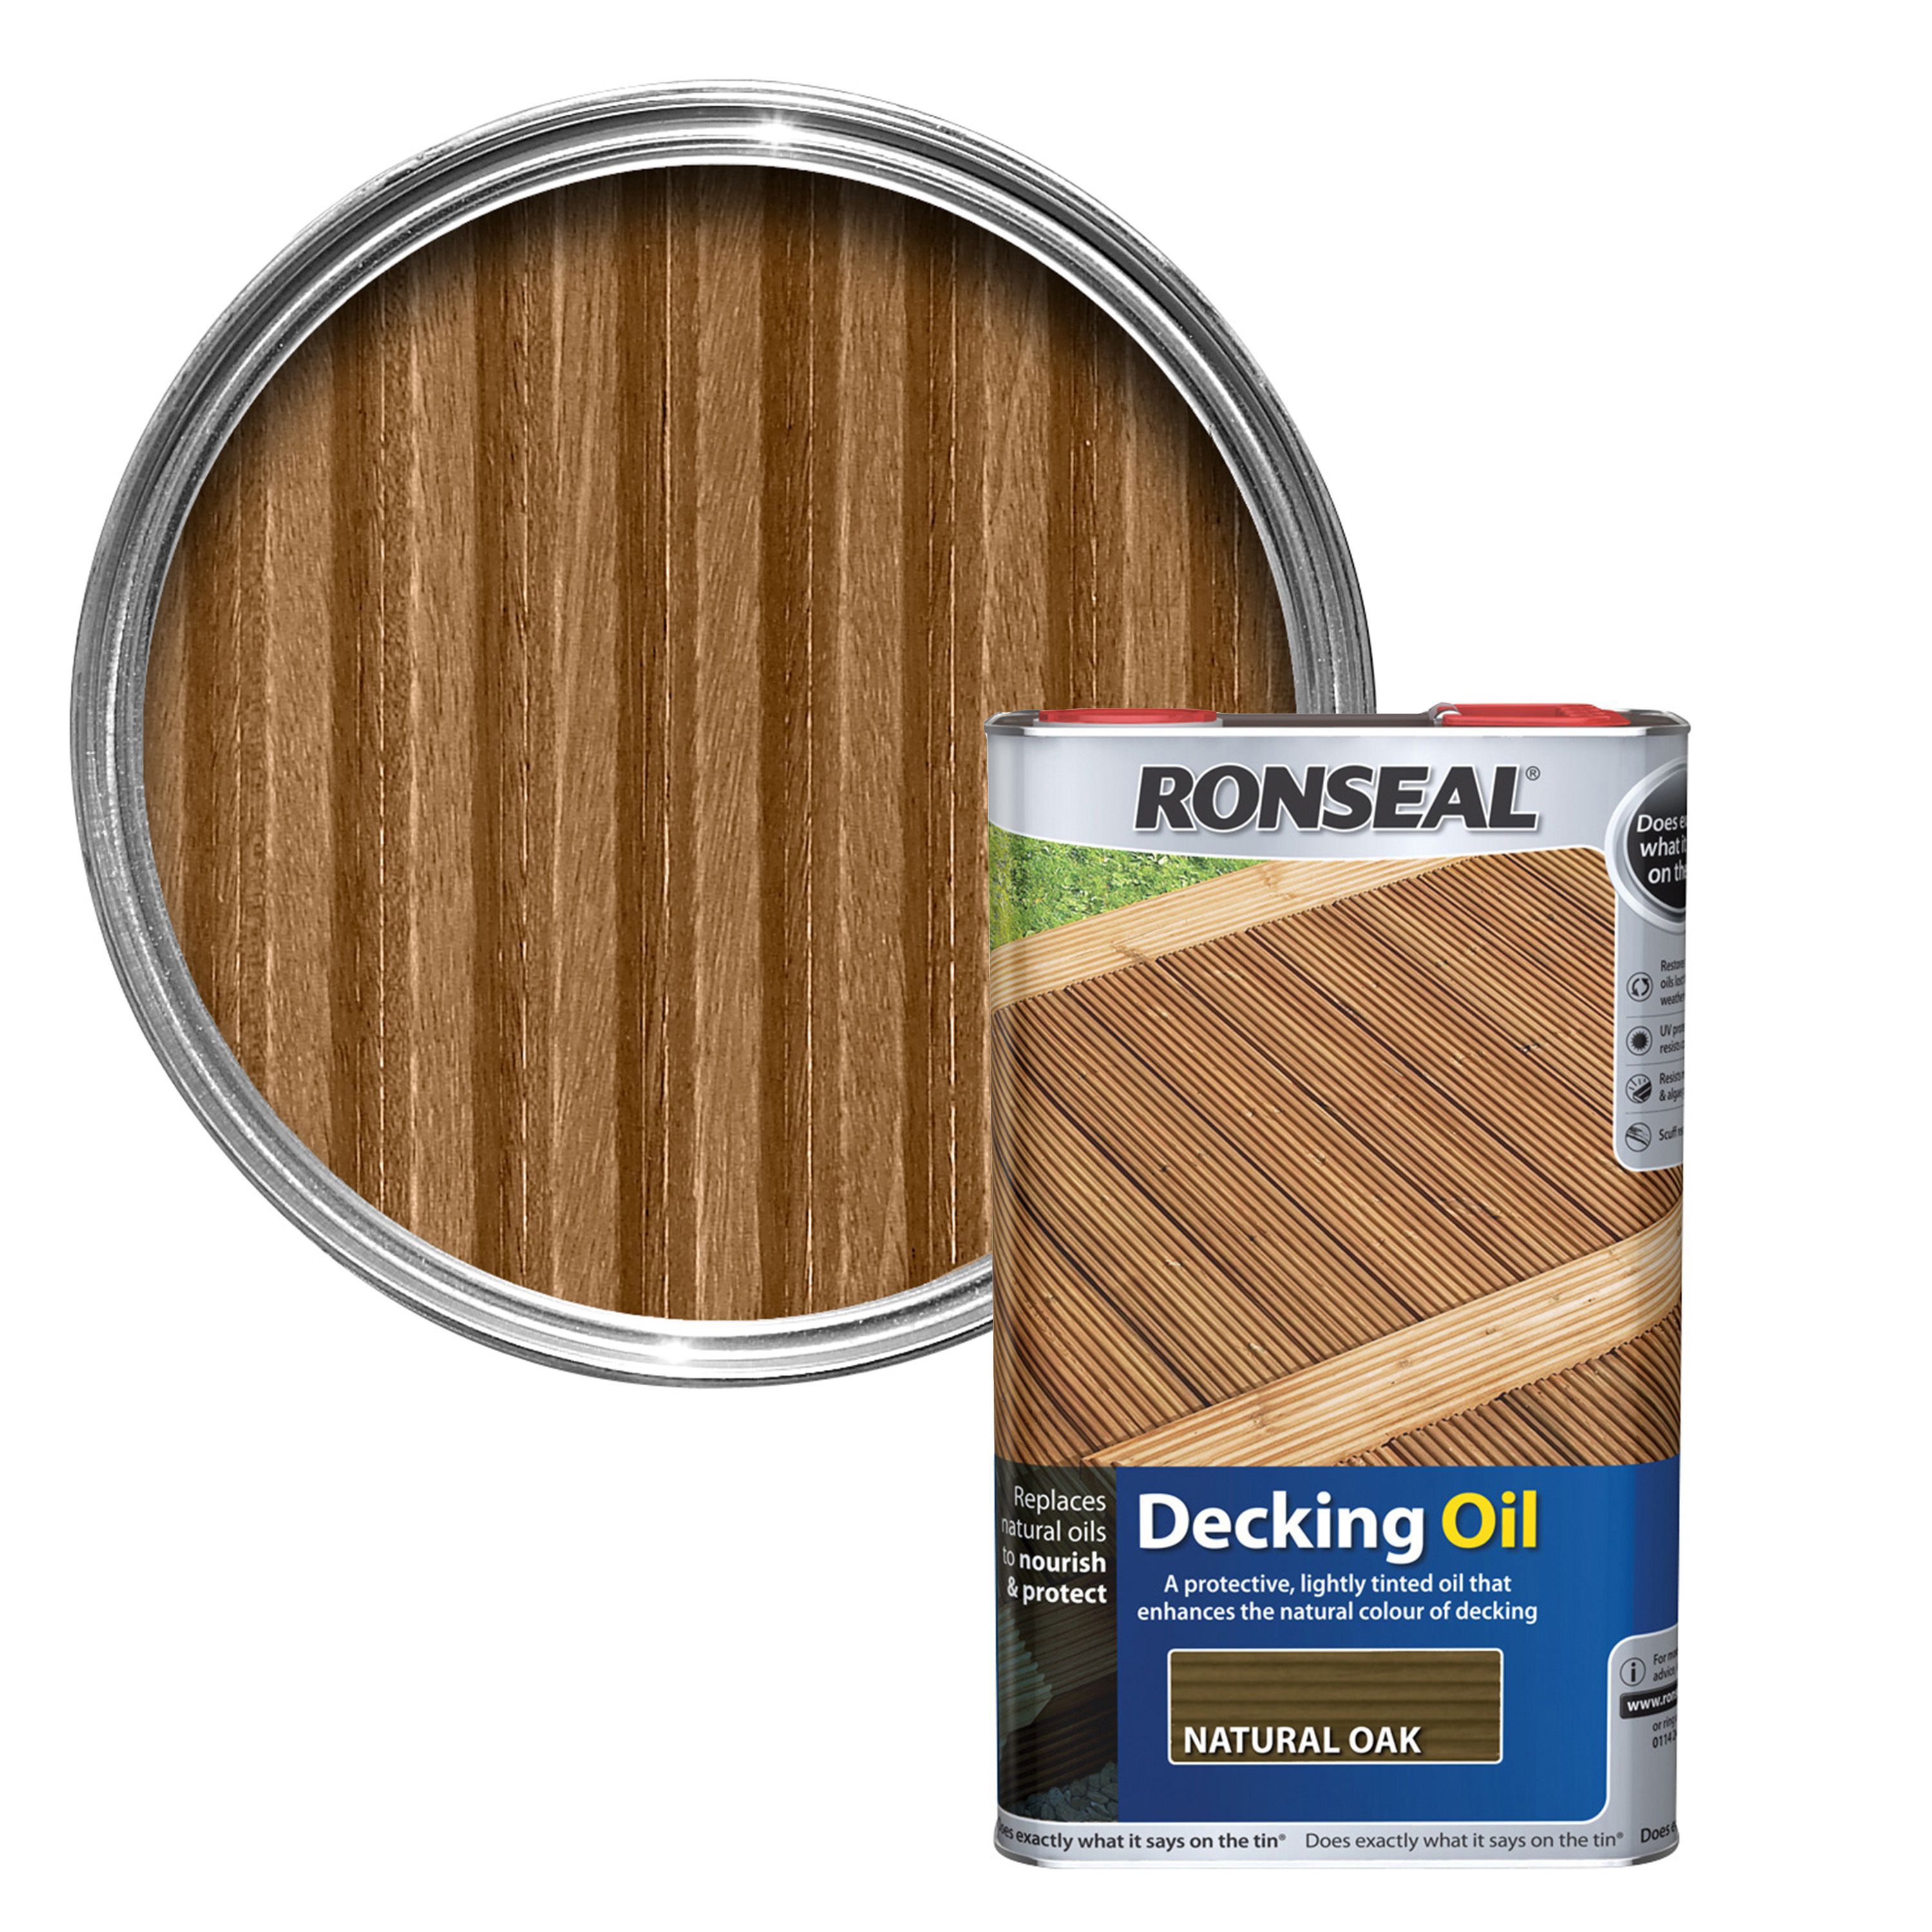 Ronseal Natural oak Decking oil 5L | Departments | DIY at B&Q